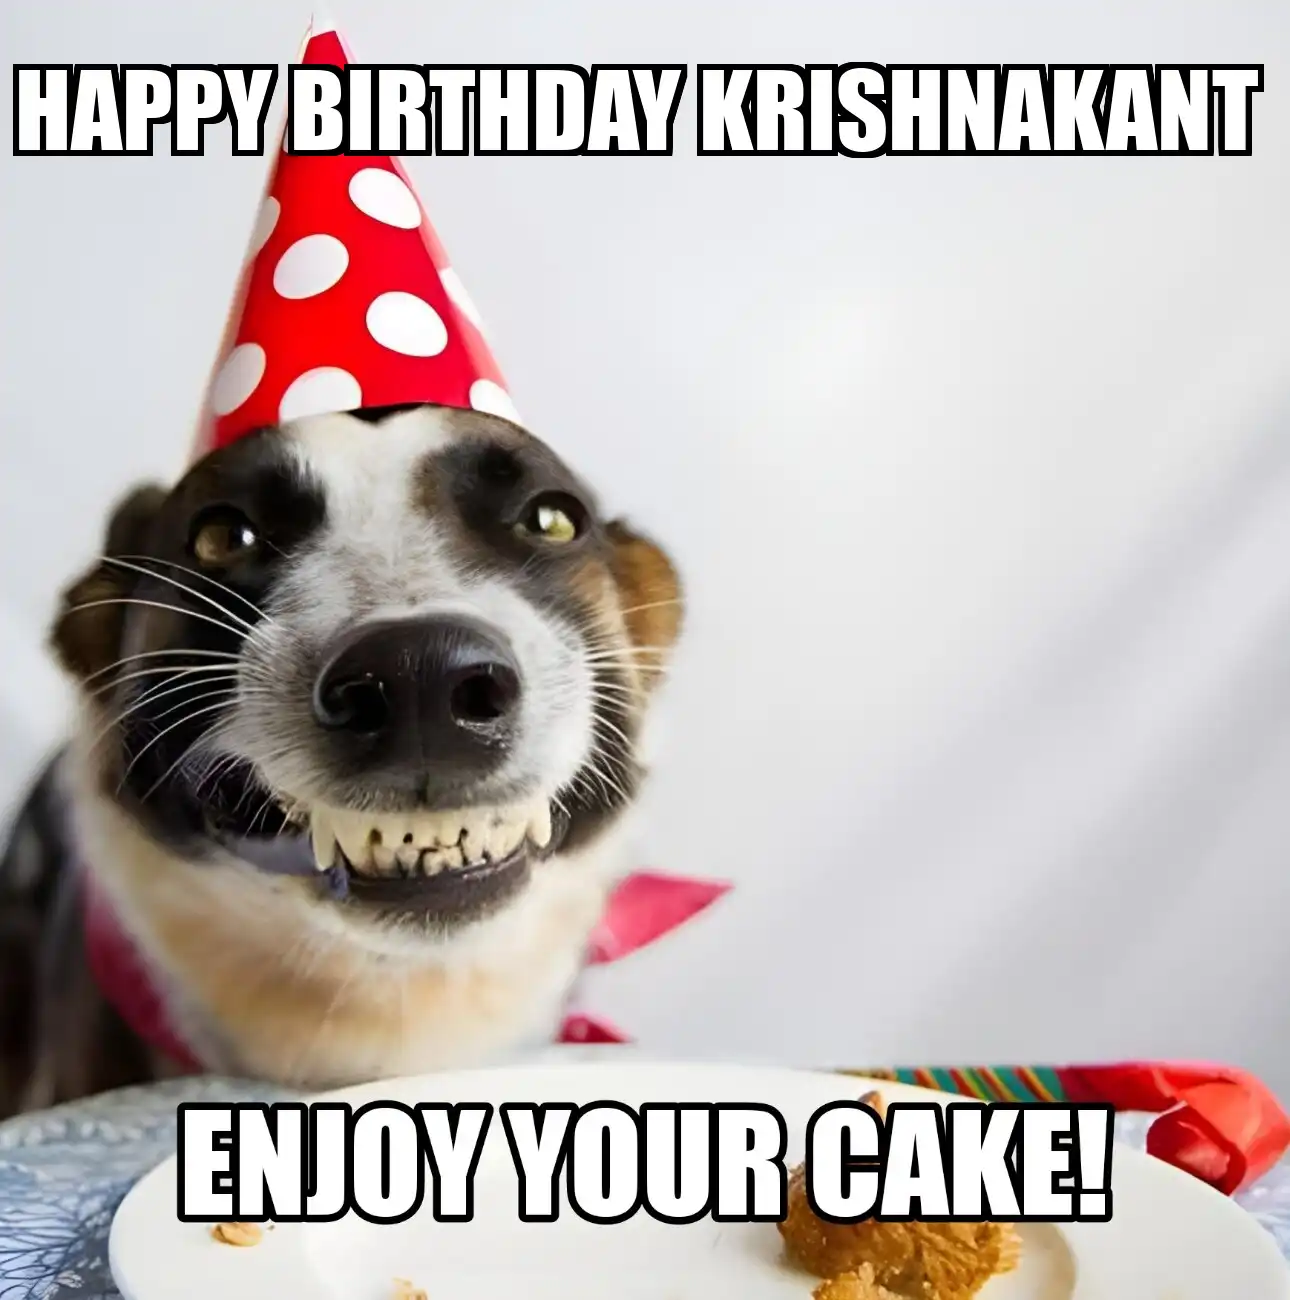 Happy Birthday Krishnakant Enjoy Your Cake Dog Meme